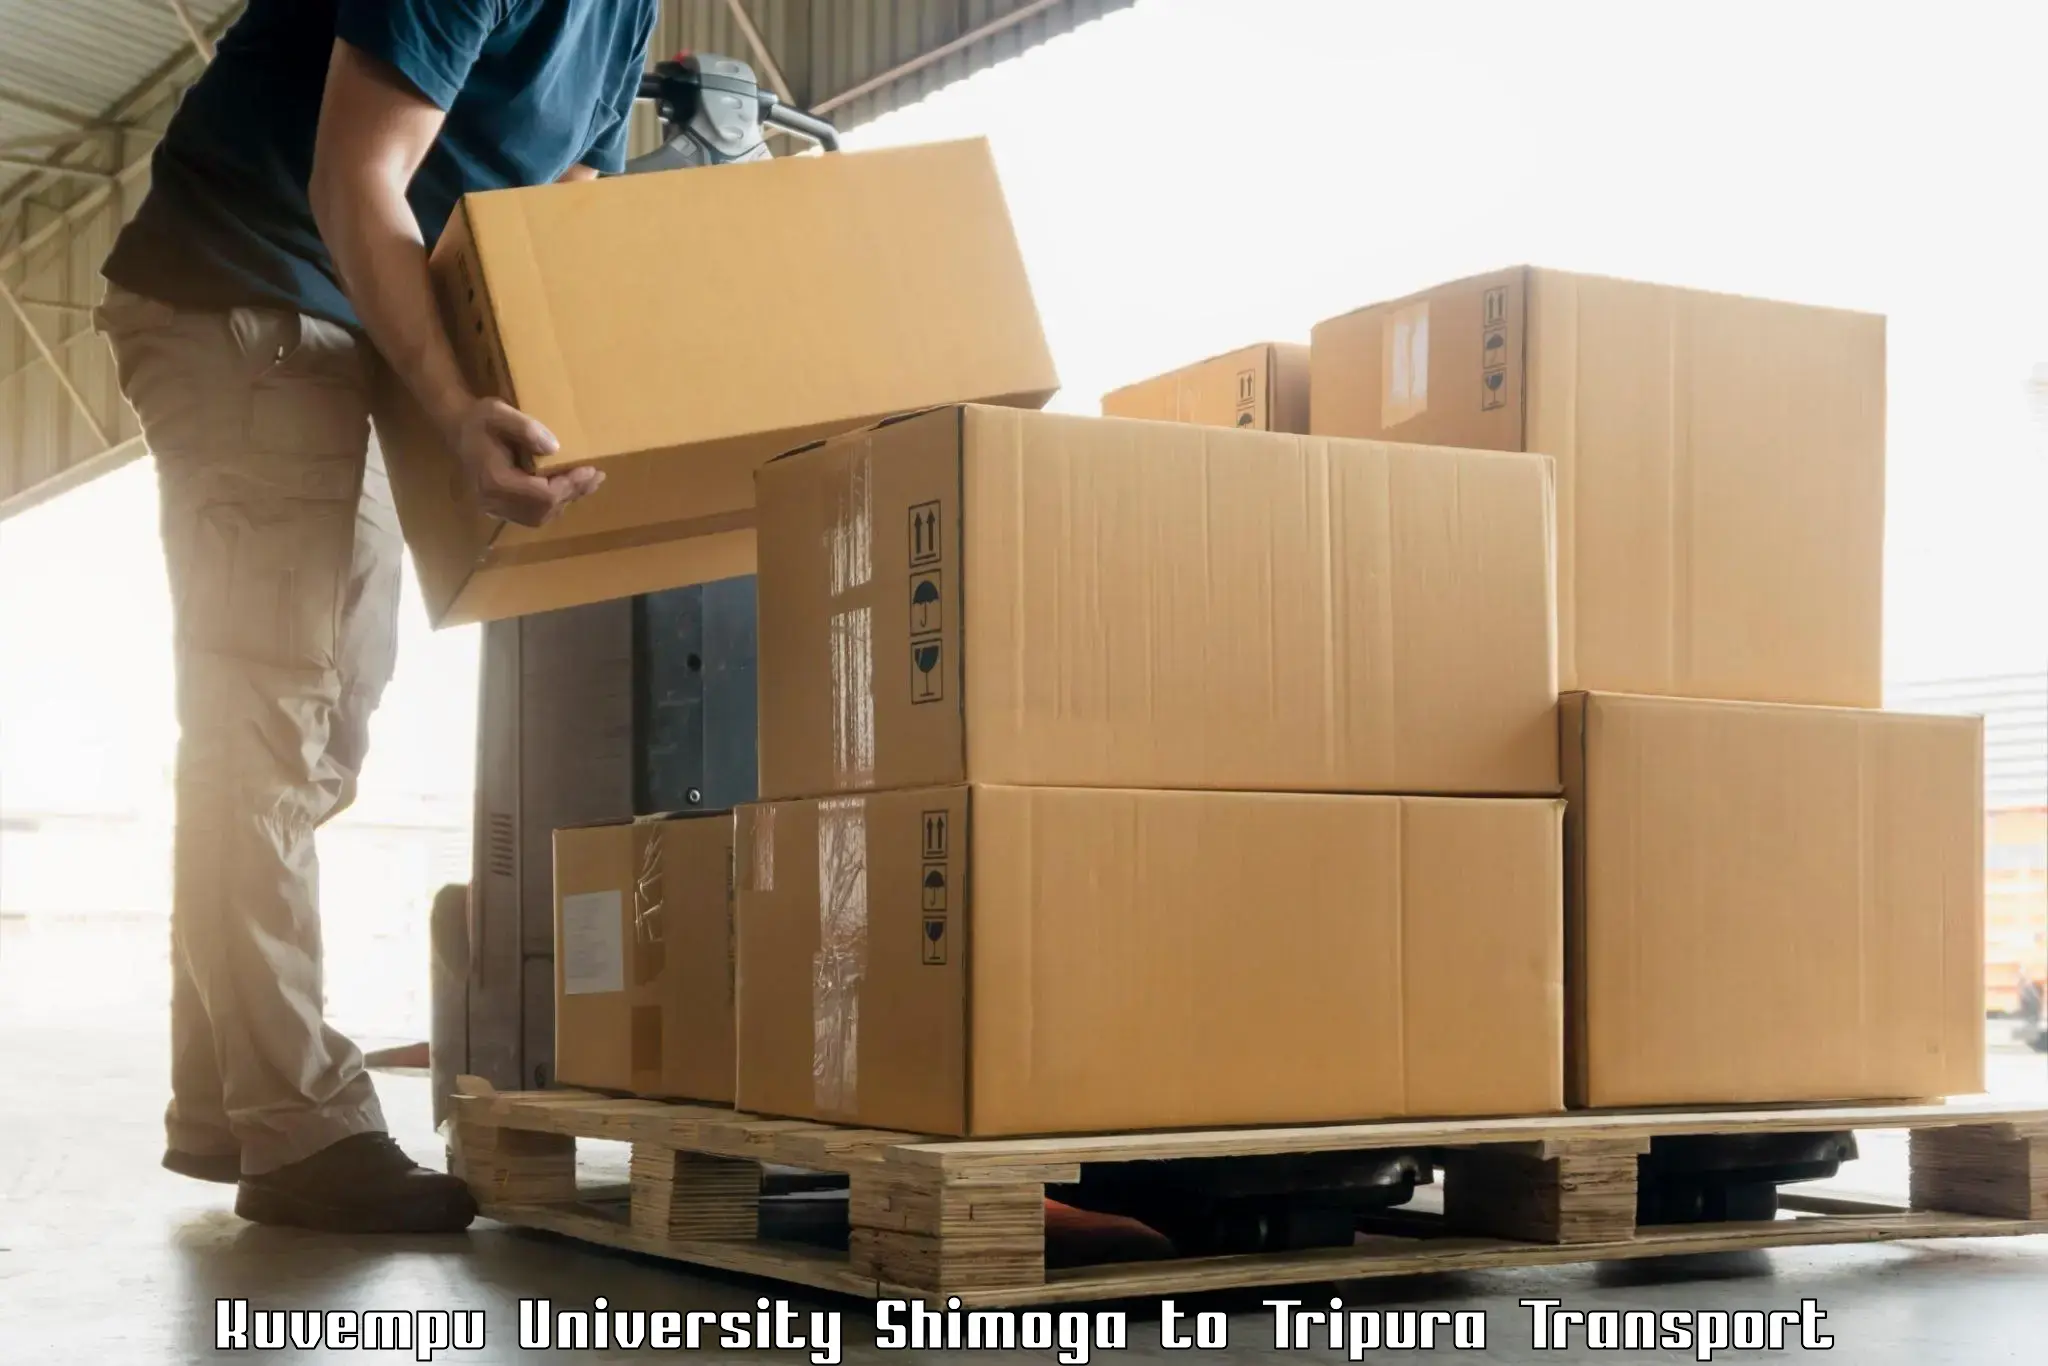 Shipping services Kuvempu University Shimoga to Kailashahar